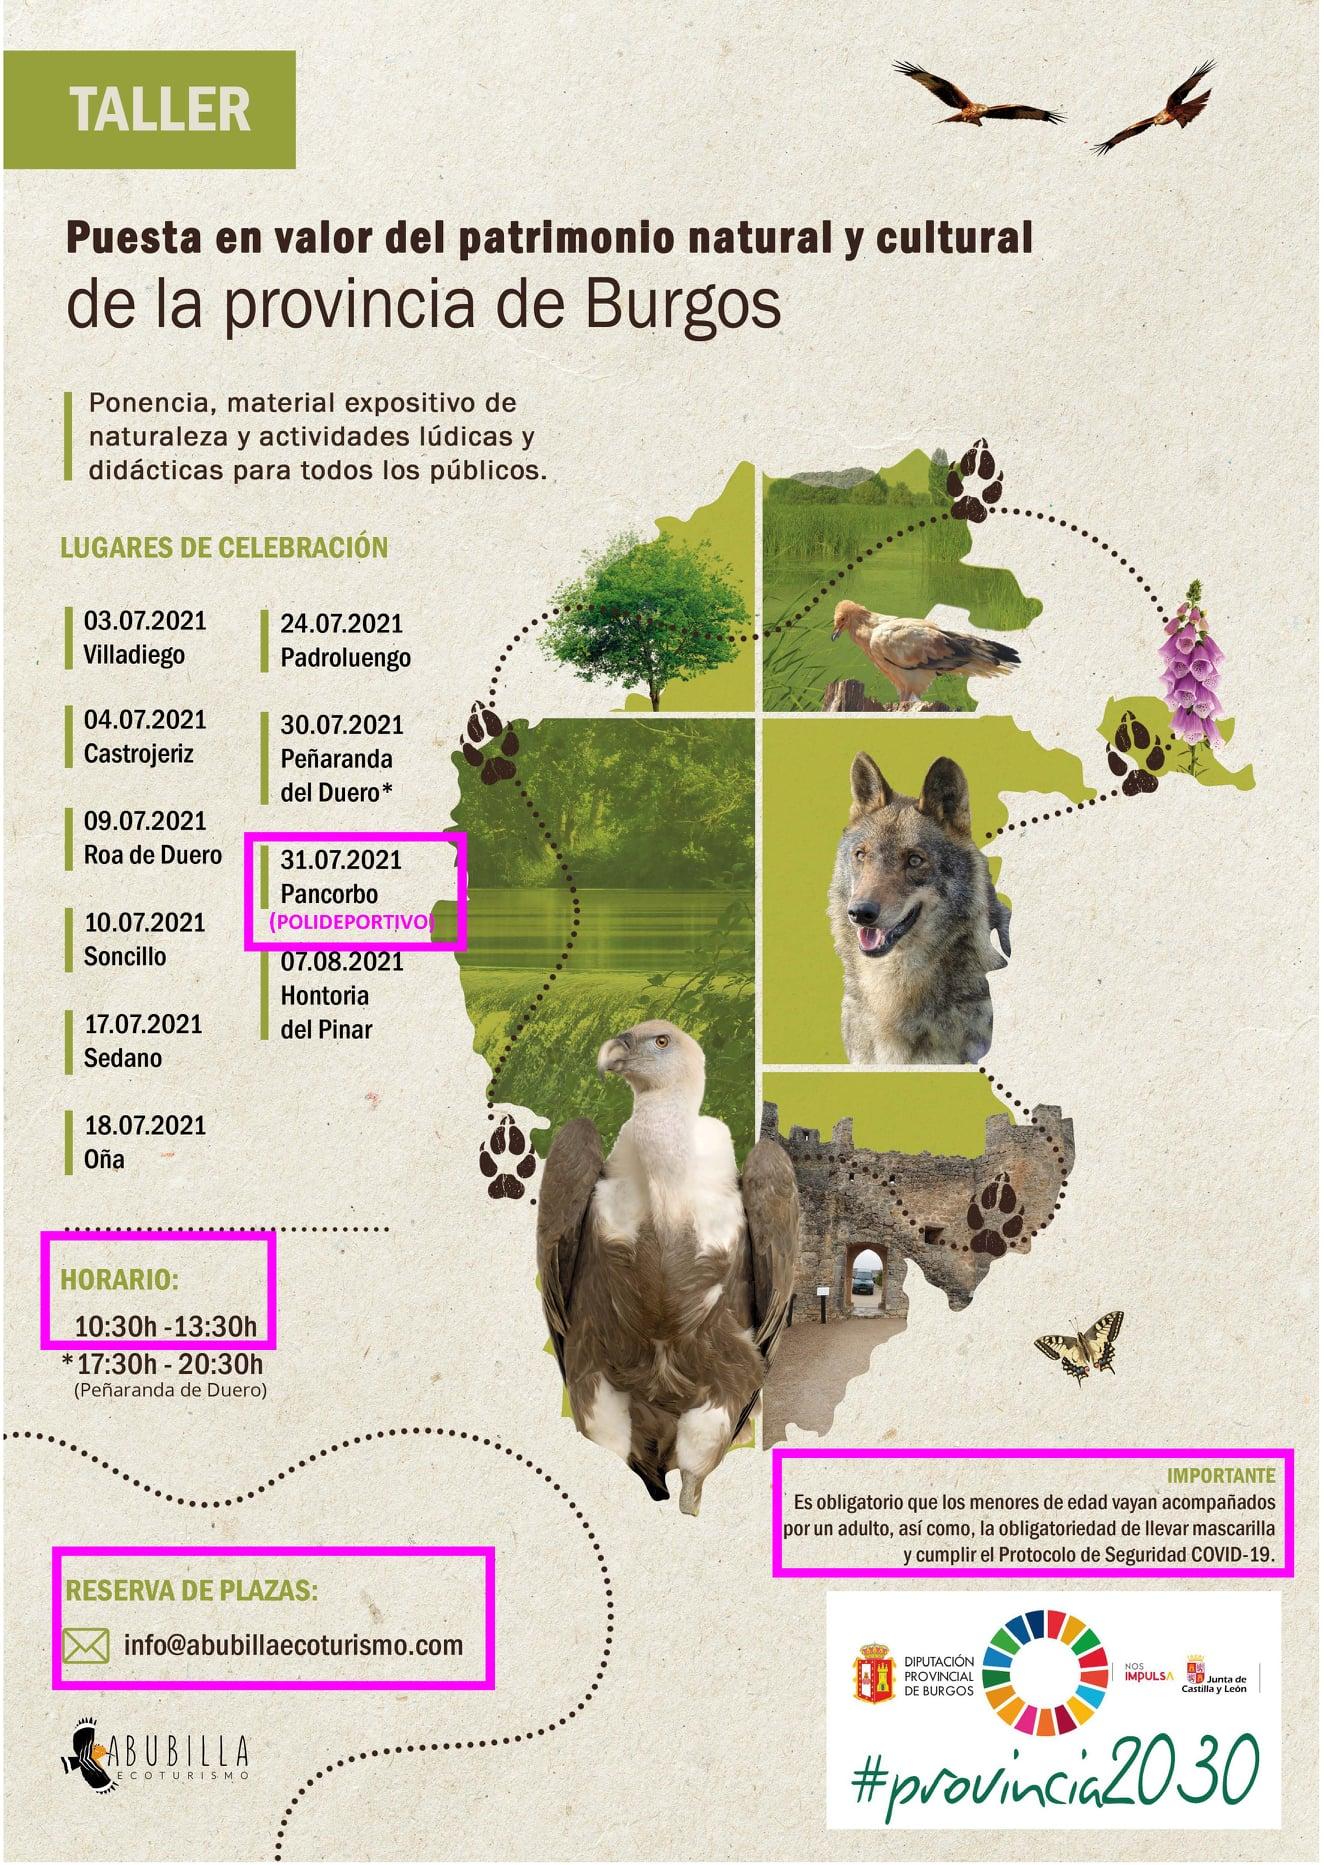 Puesta en valor del patrimonio natural y cultural de la provincia de Burgos.